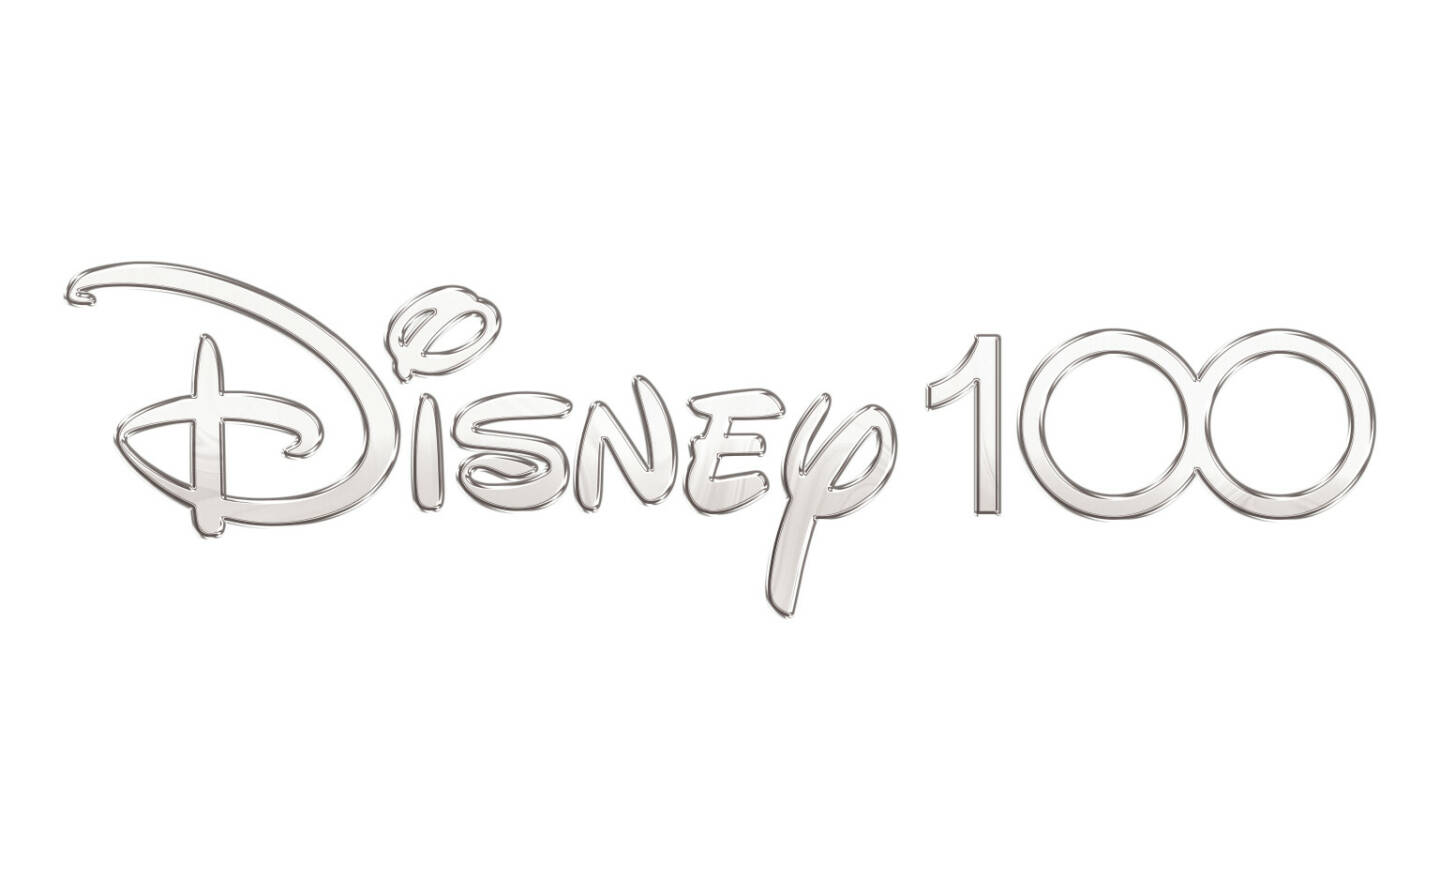 The Walt Disney Company (Germany) GmbH: Disney stellt bedeutsames Lineup an weltweiten Produktkooperationen
zur Feier von 100 Jahren Disney vor. nternationale Marken feiern 100 Jahre Disney mit einzigartigen Produktkooperationen rund um Disney, Pixar, Star Wars, Marvel, 20th Century und National Geographic; Fotocredit:The Walt Disney Company (Germany) GmbH